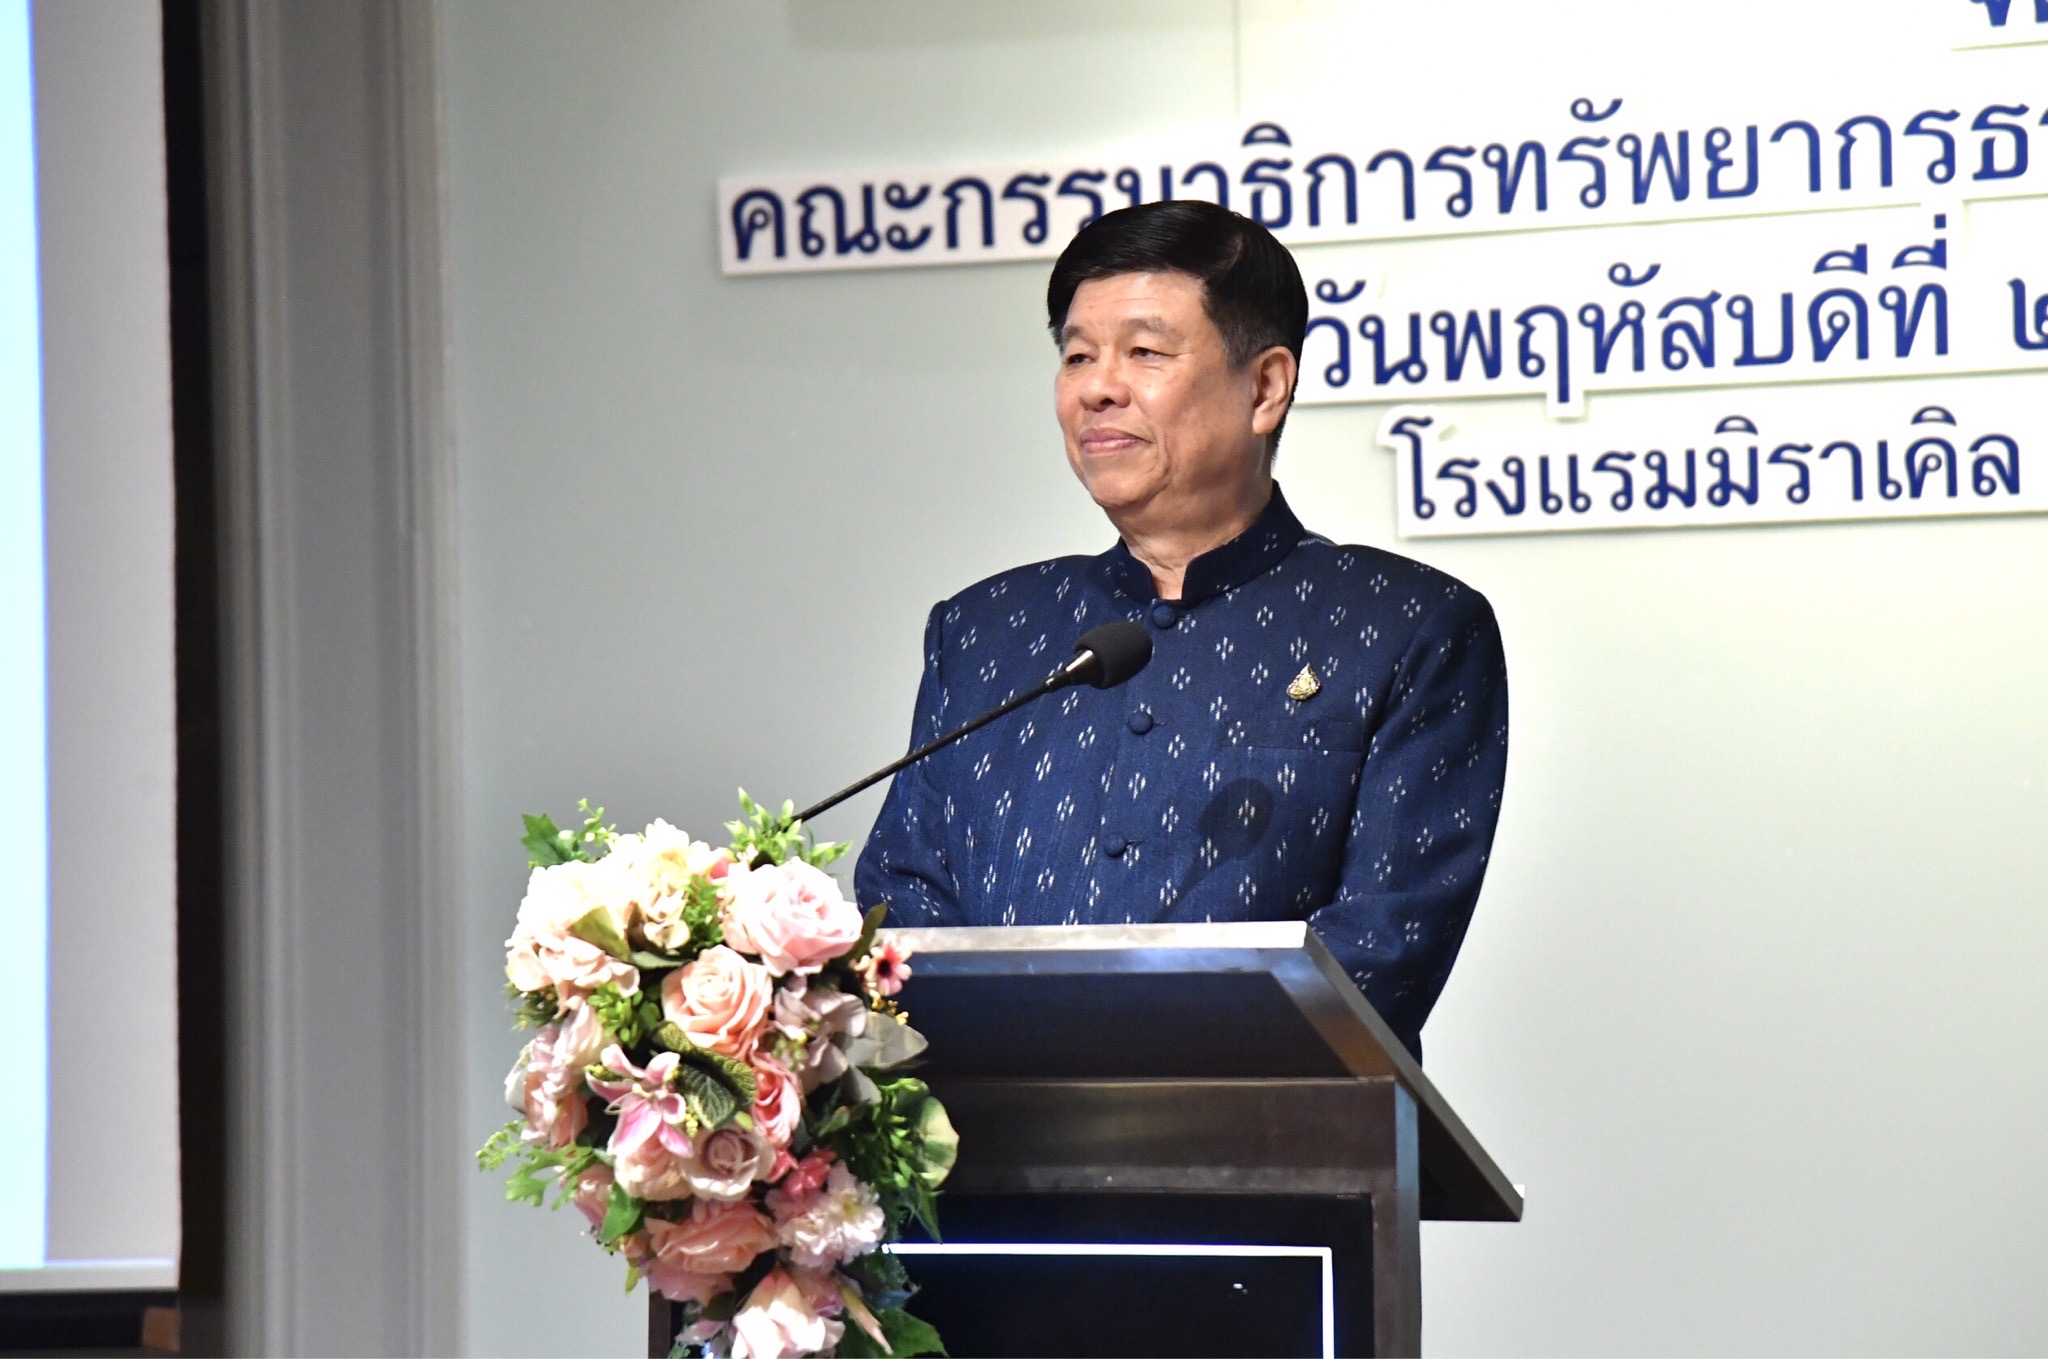 กมธ.ทรัพยากรธรรมชาติฯ จัดสัมมนา “แนวทางการบริหารจัดการปัญหาขยะทะเลของไทย” เพื่อระดมความเห็นเป็นแนวทางจัดทำแผนฯ ต่อไป